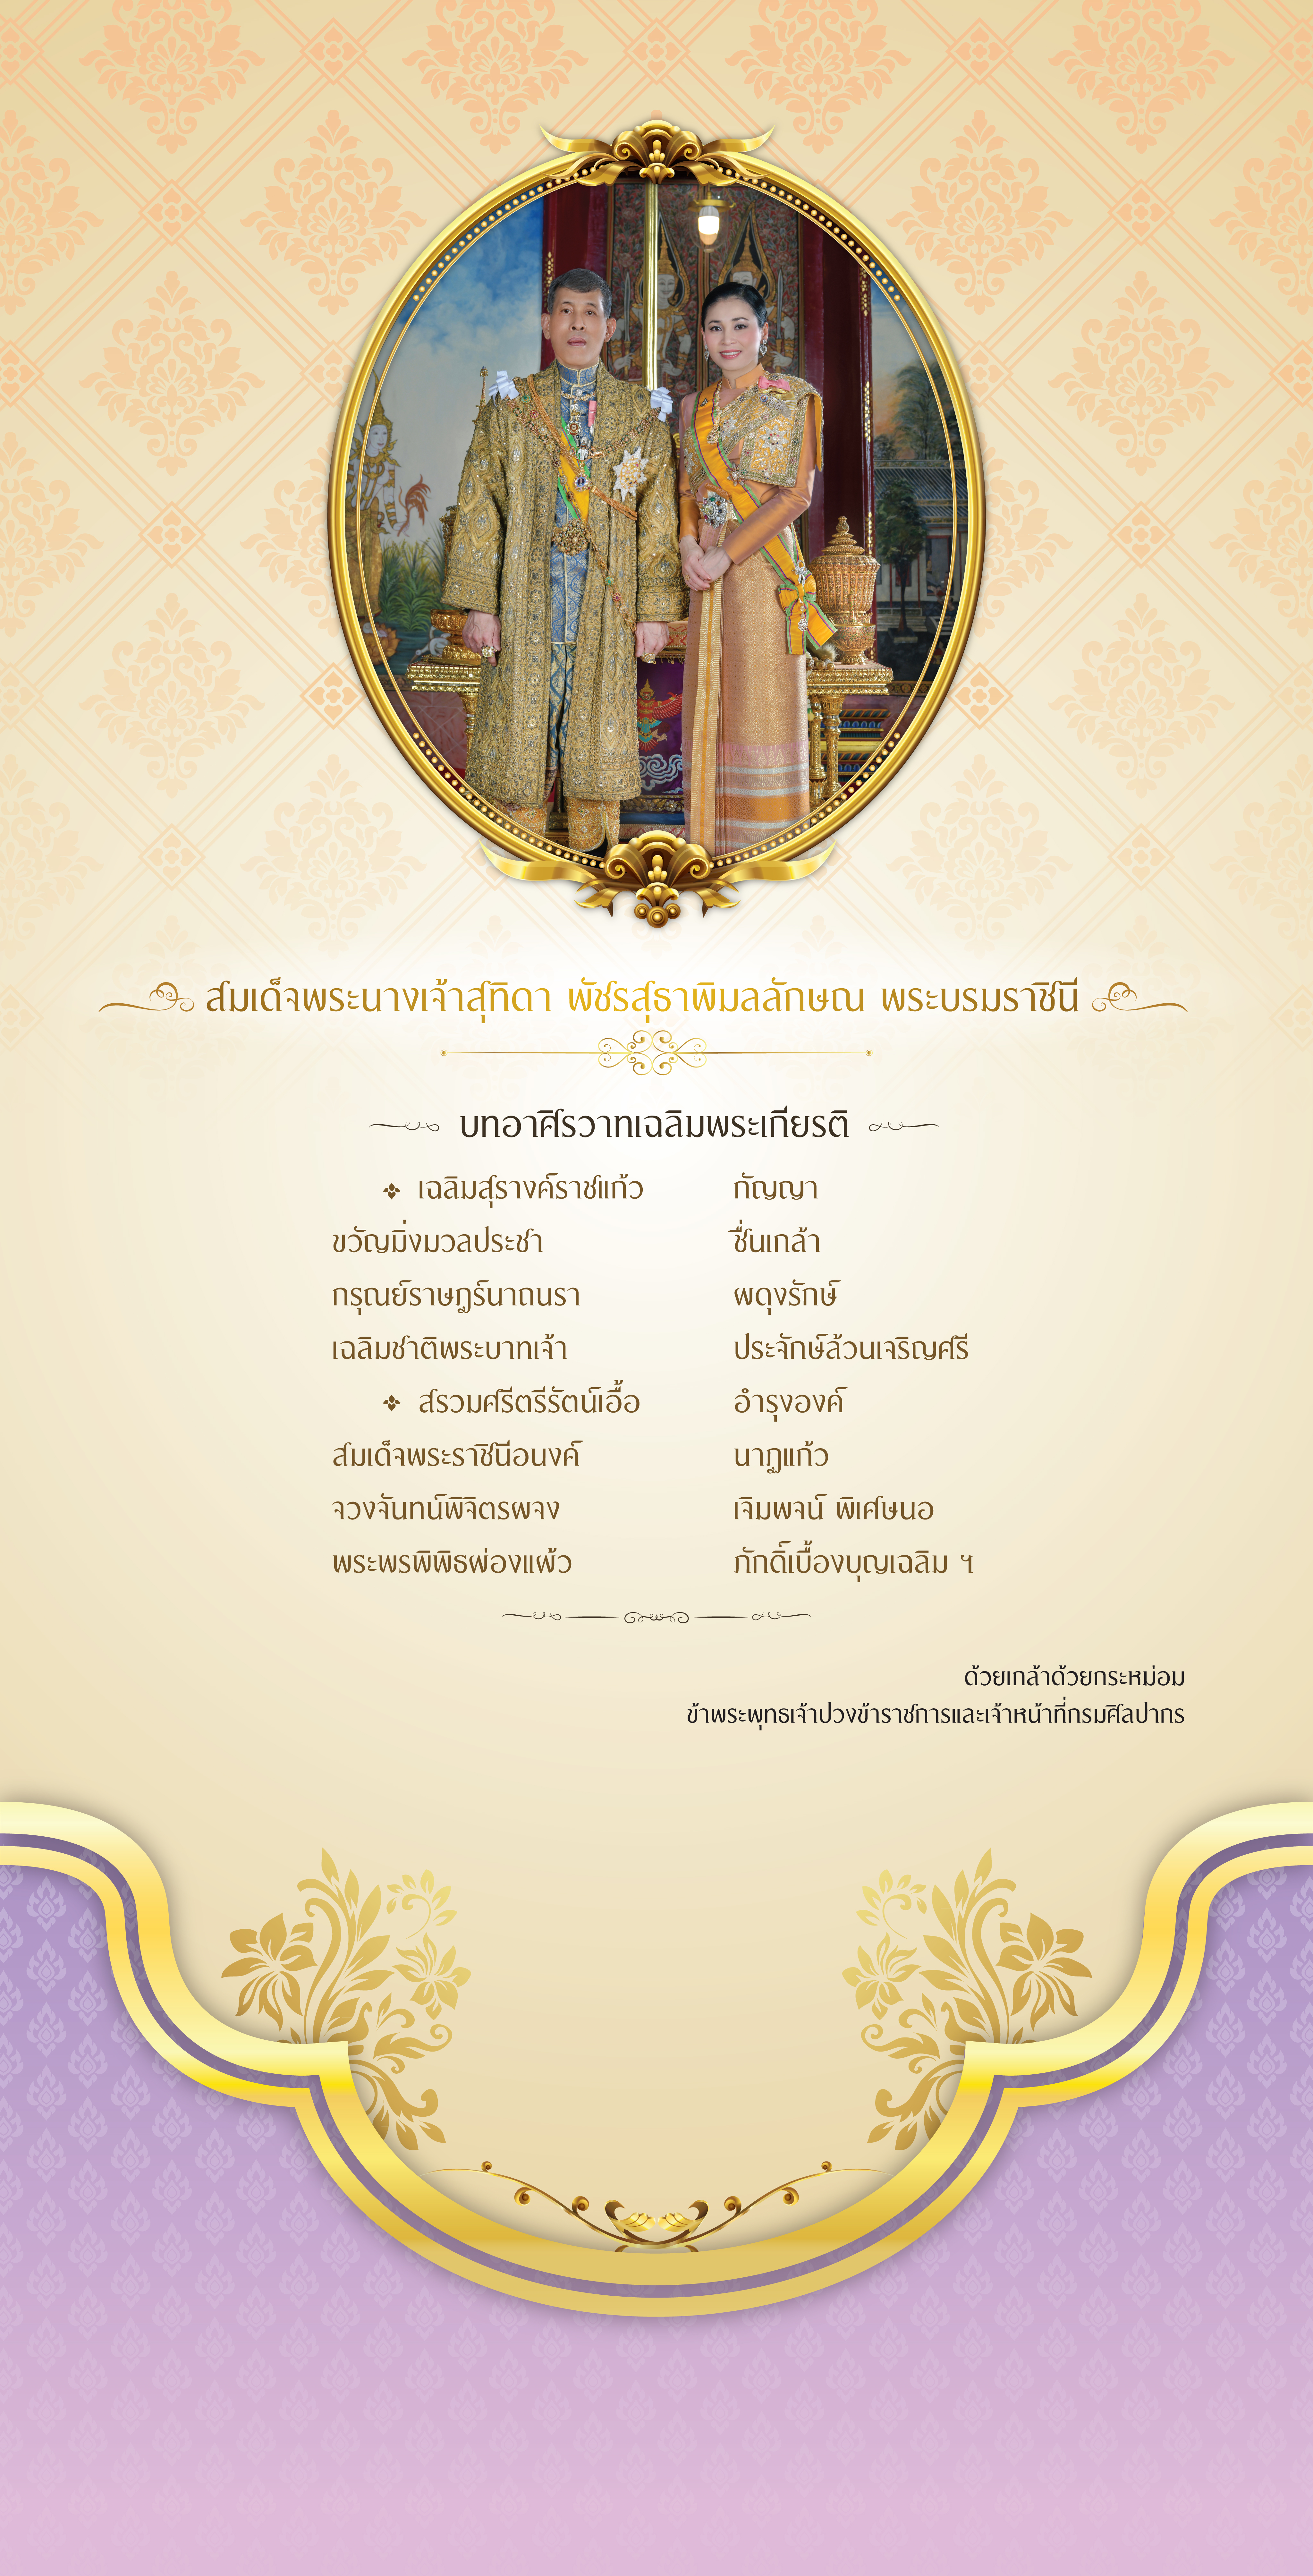 ขอเชิญชมนิทรรศการเฉลิมพระเกียรติ สมเด็จพระนางเจ้าสุทิดา พัชรสุธาพิมลลักษณ พระบรมราชินี เนื่องในโอกาสวันเฉลิมพระชนมพรรษา 3 มิถุนายน 2564